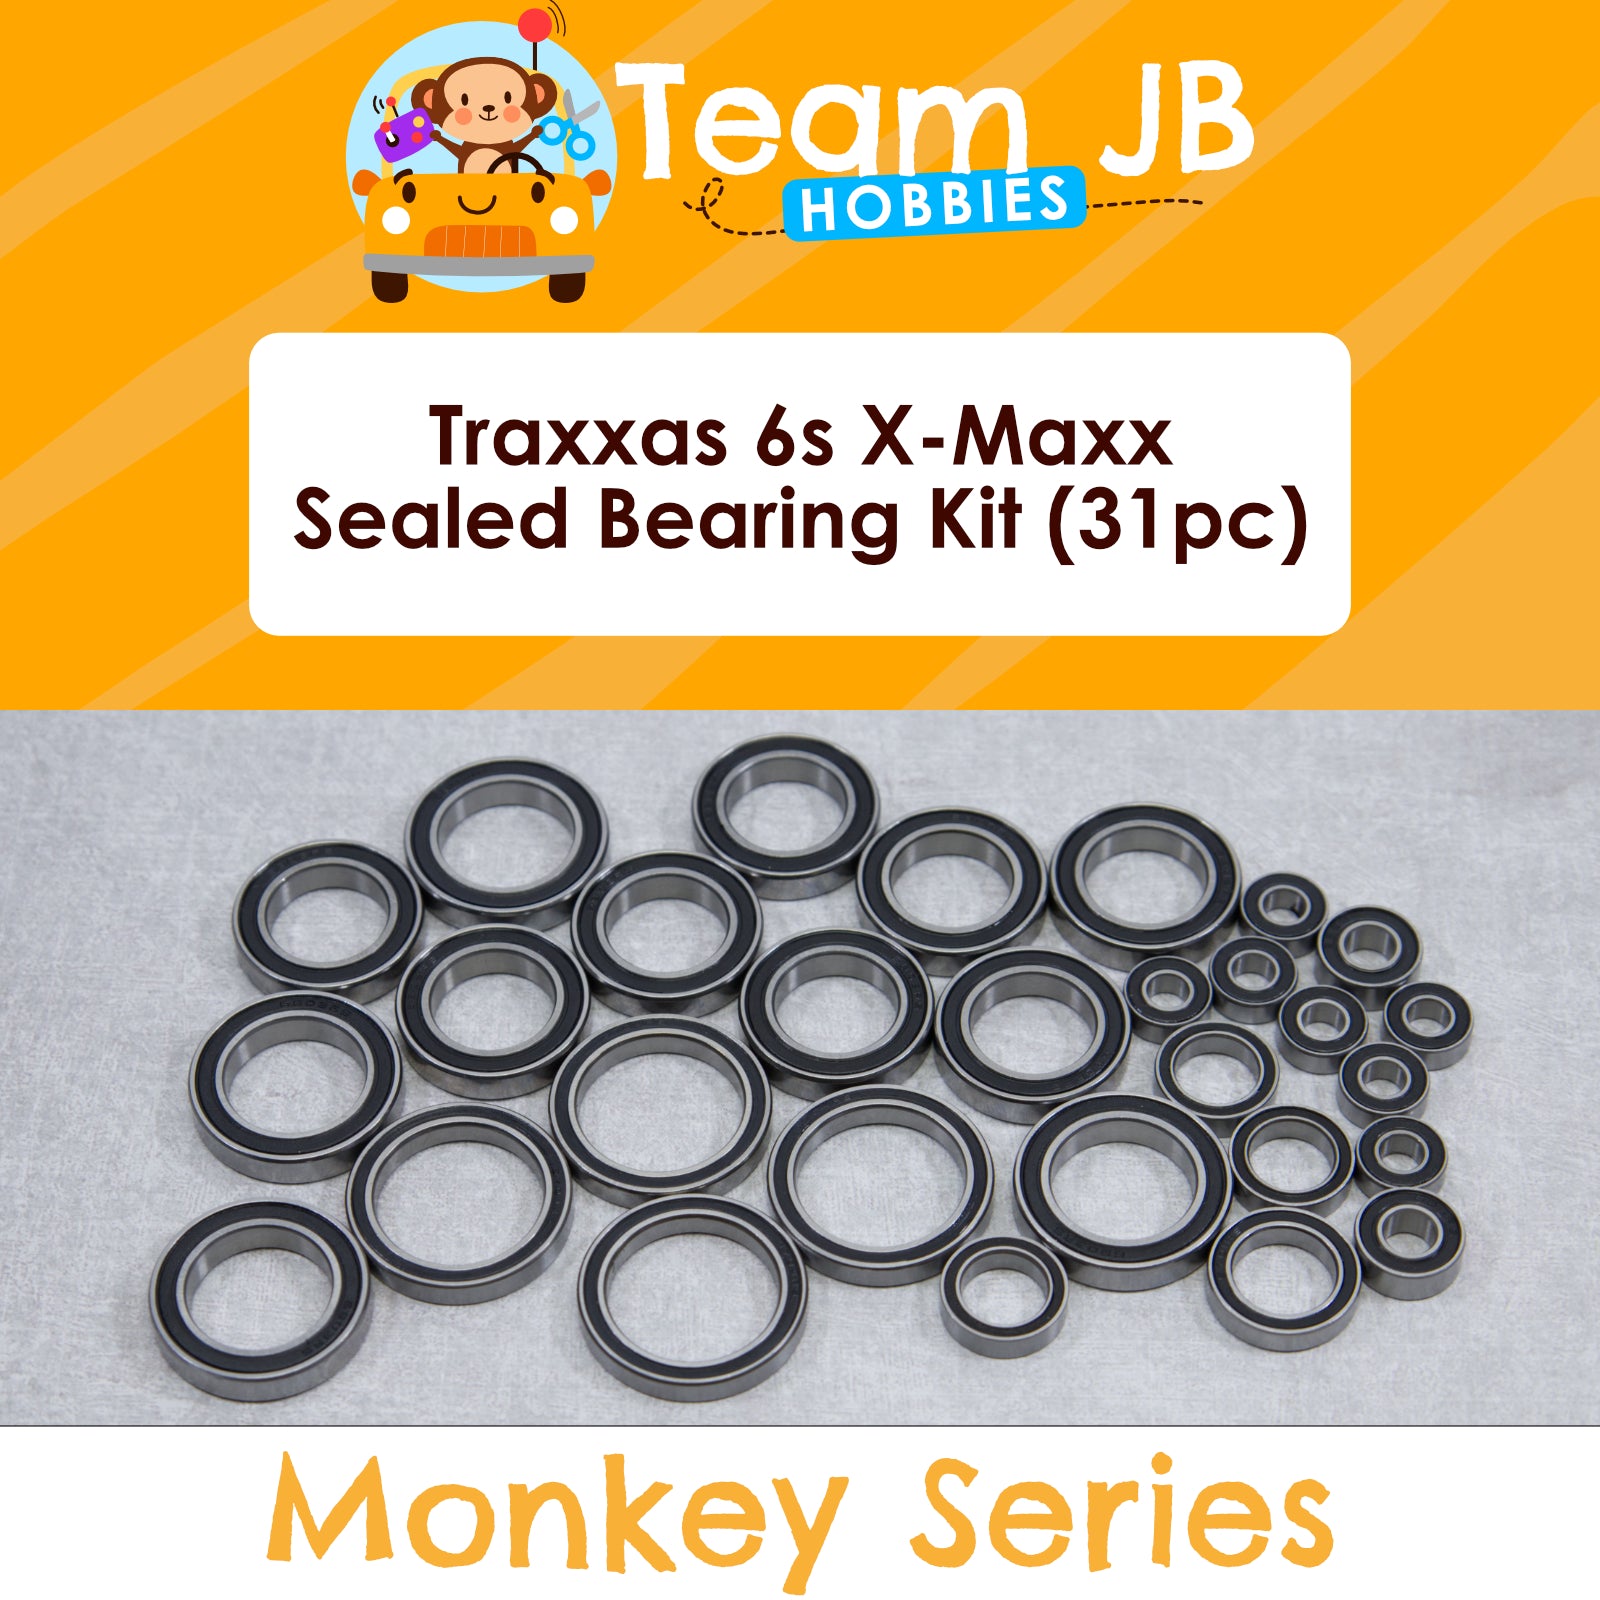 Traxxas 6s X-Maxx - Sealed Bearing Kit